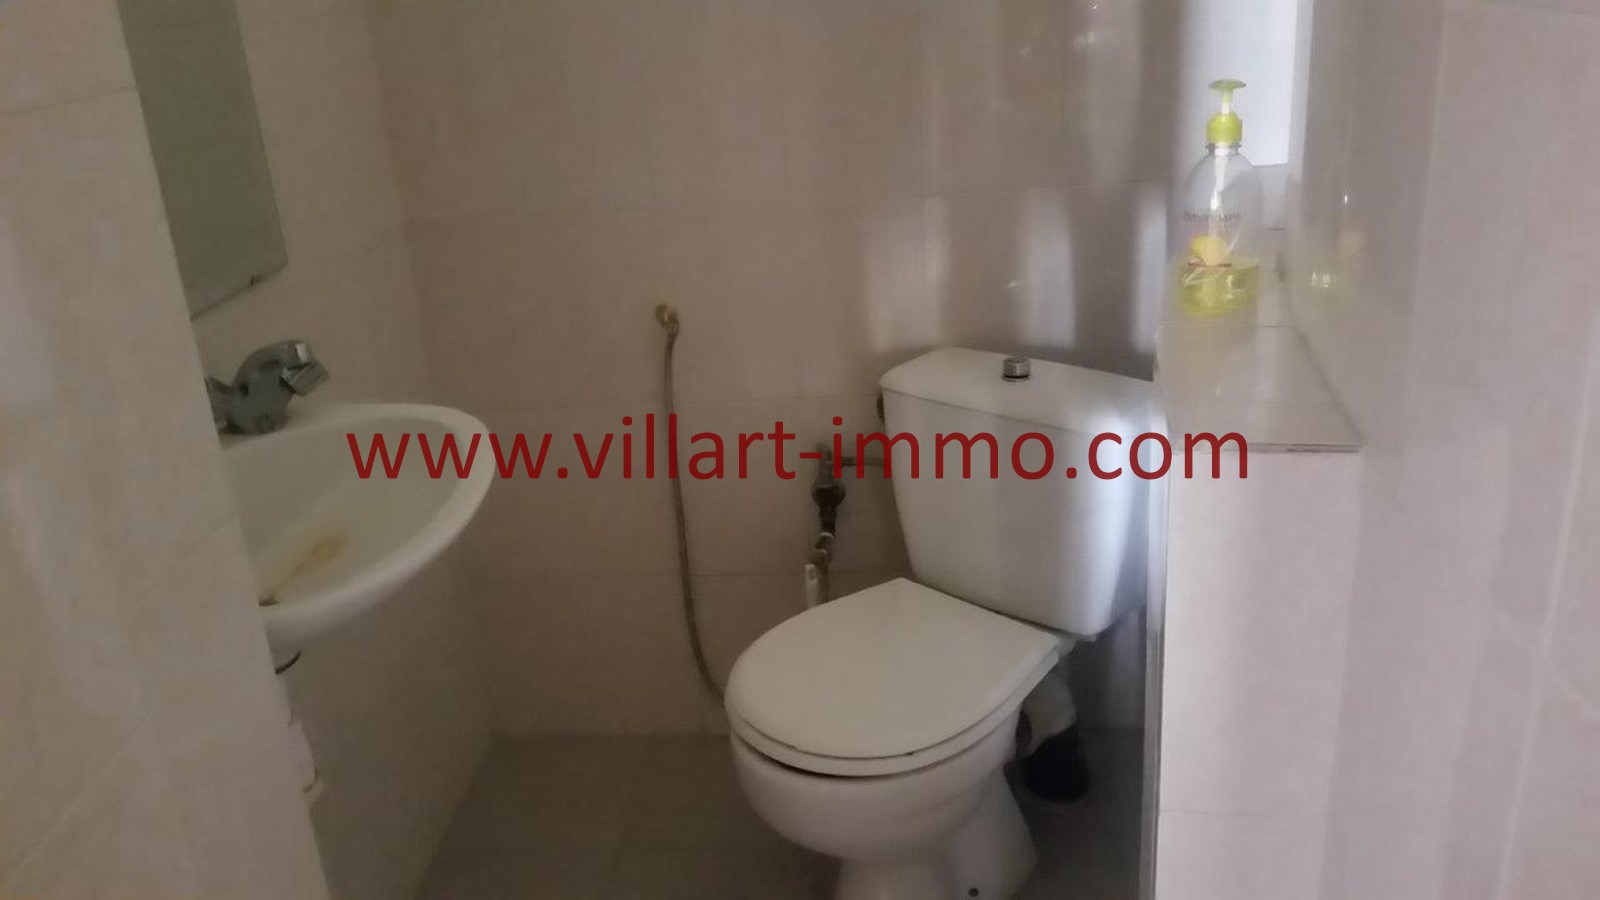 8-location-Appartement-Meublé-Tanger-Centre ville-Cabinet de toilette-L1014-Villart Immo-Maroc